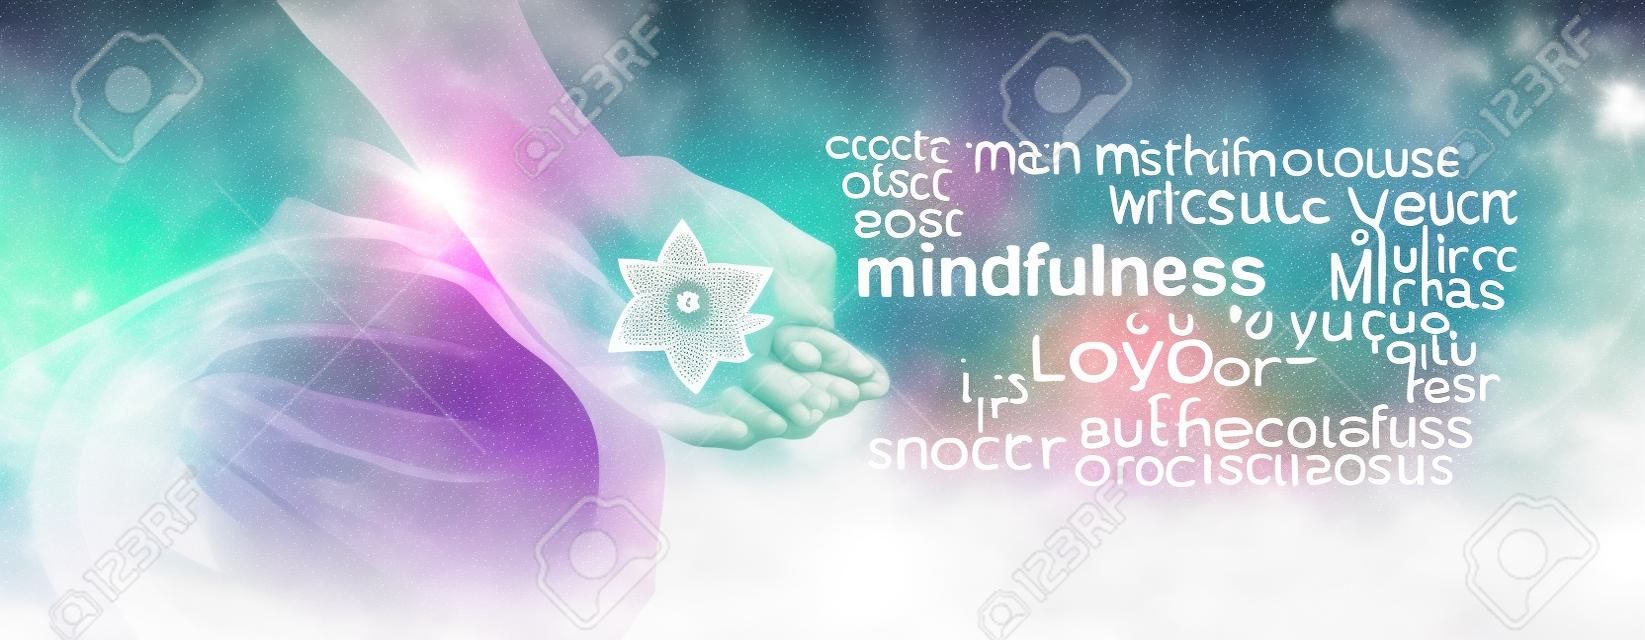 Mindfulness Meditatie Word Cloud Banner - Vrouw zittend in Lotus Positie aan de linkerkant met zonlicht stromend in het houden van een Merkabah kristal mediteren en een mindfulness woord wolk aan de rechterkant